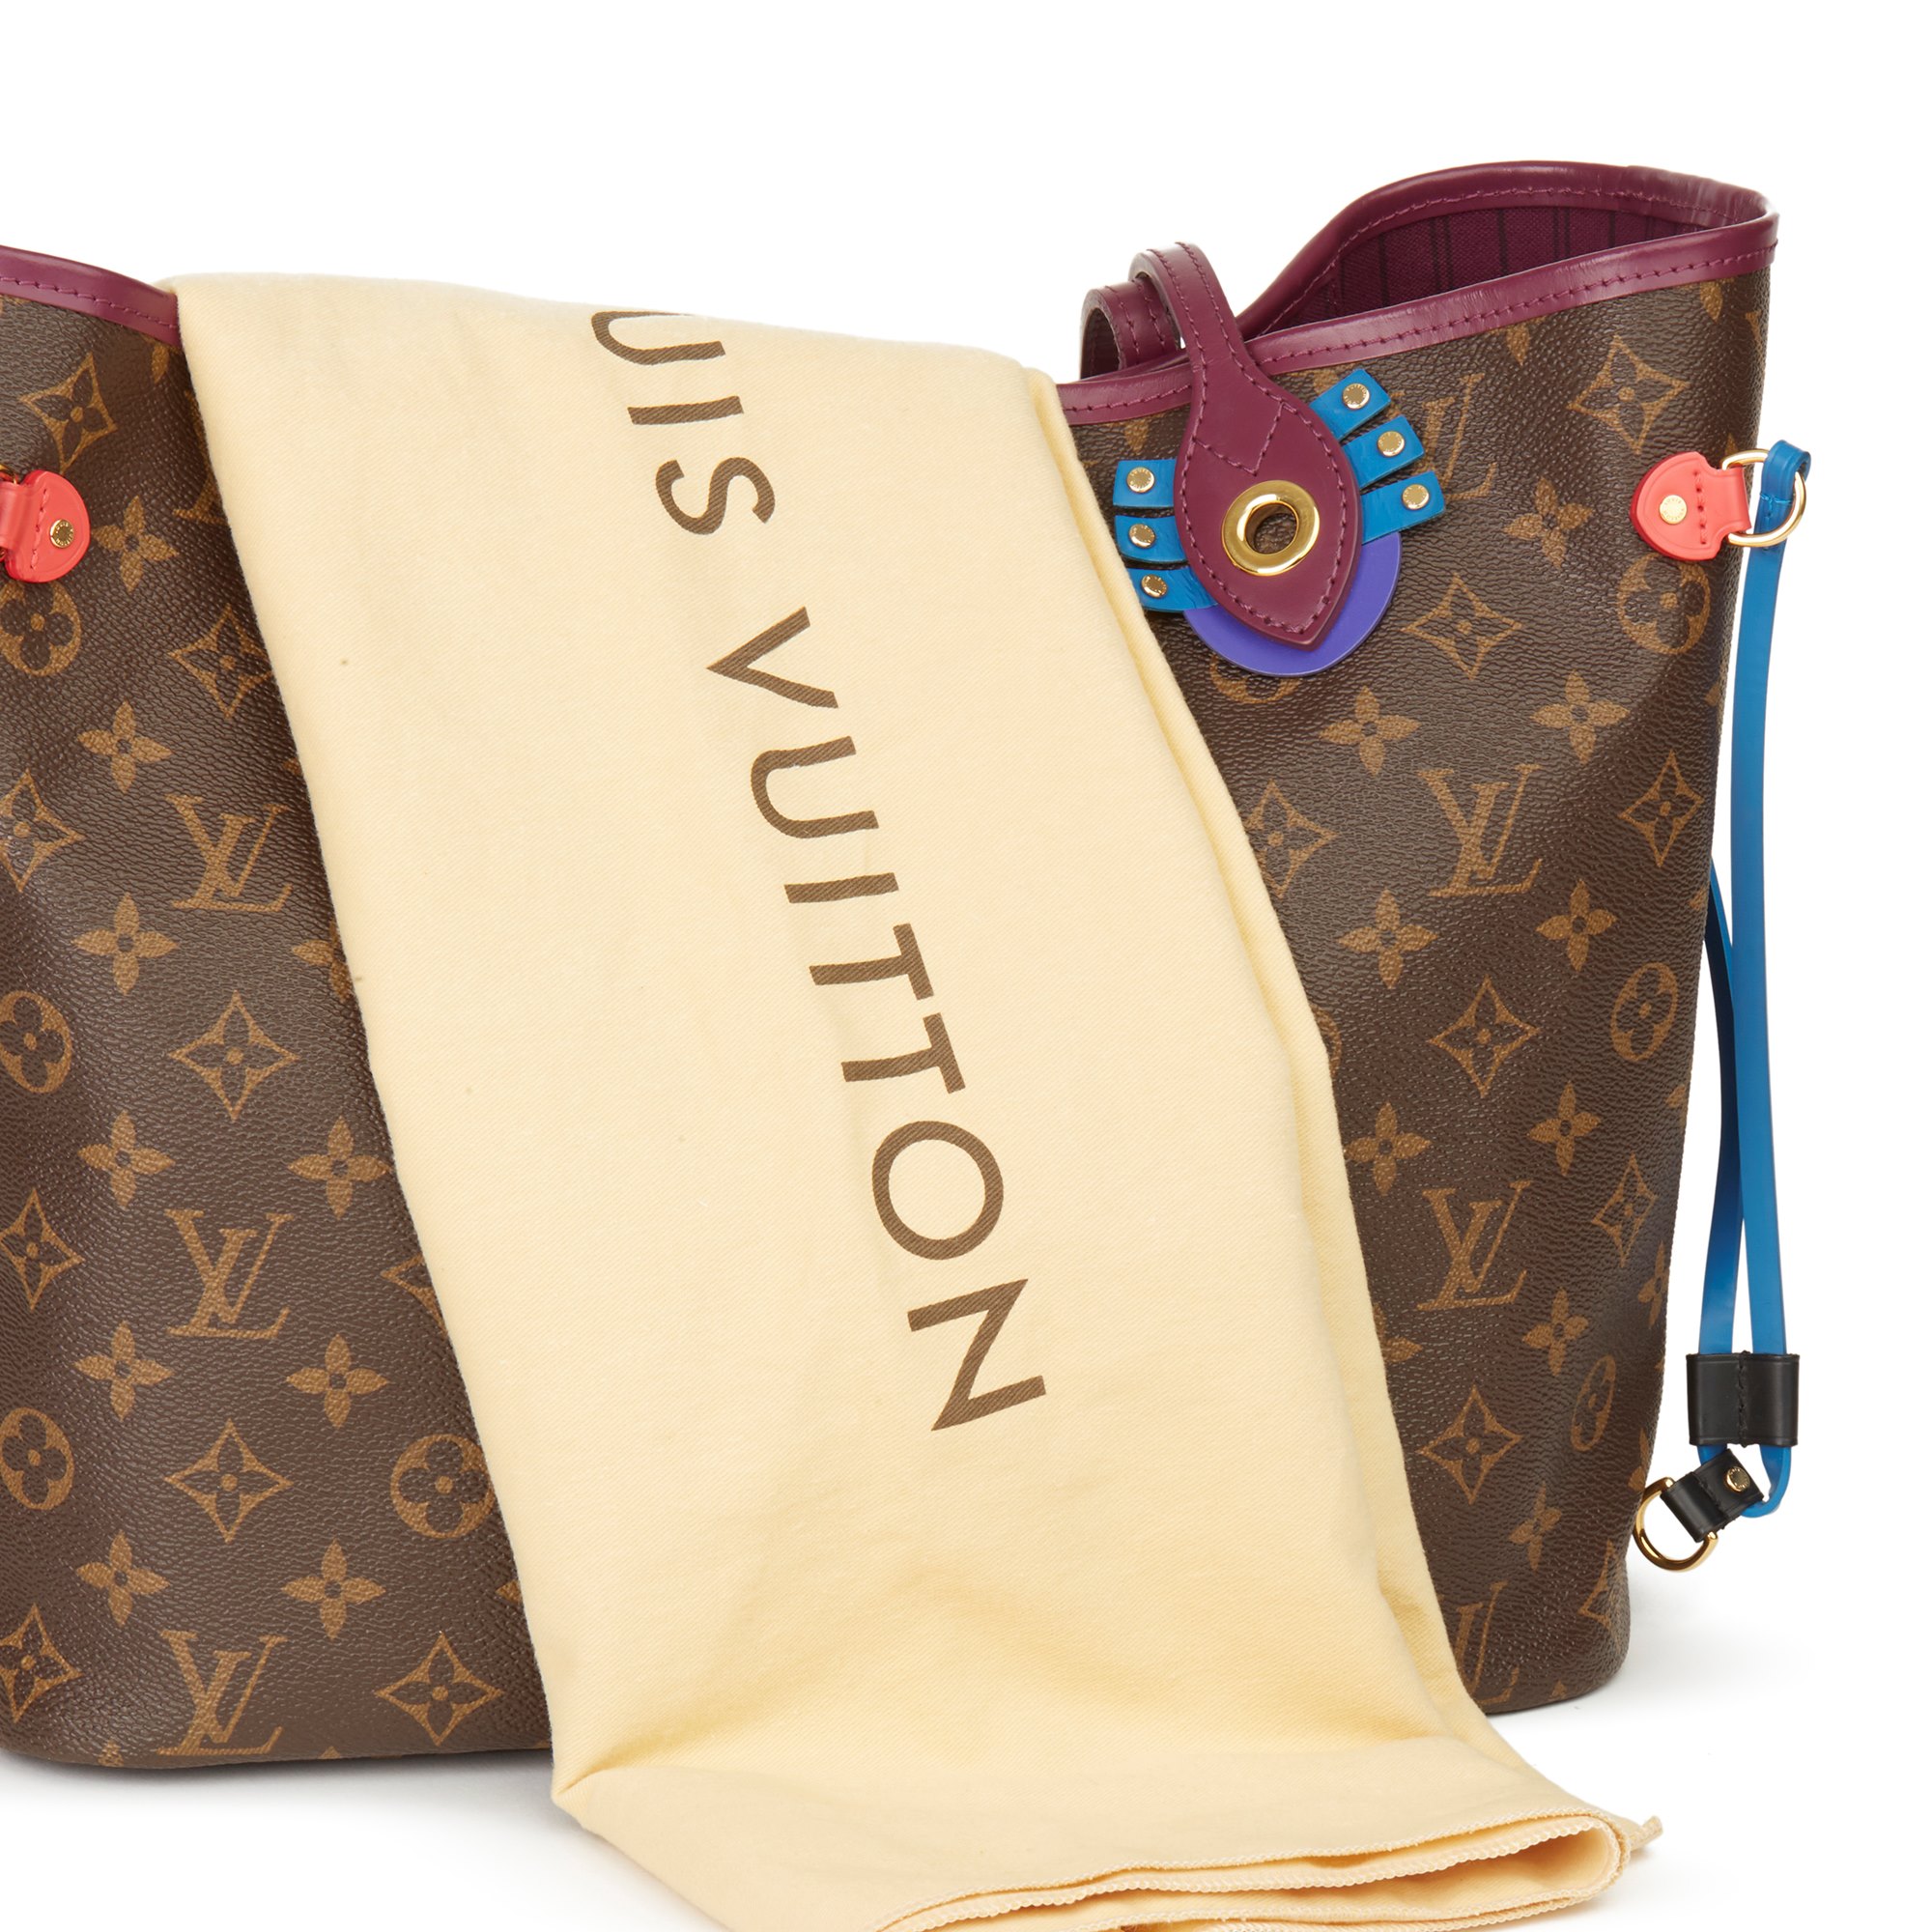 Louis Vuitton Neverfull MM 2015 HB3052 | Second Hand Handbags